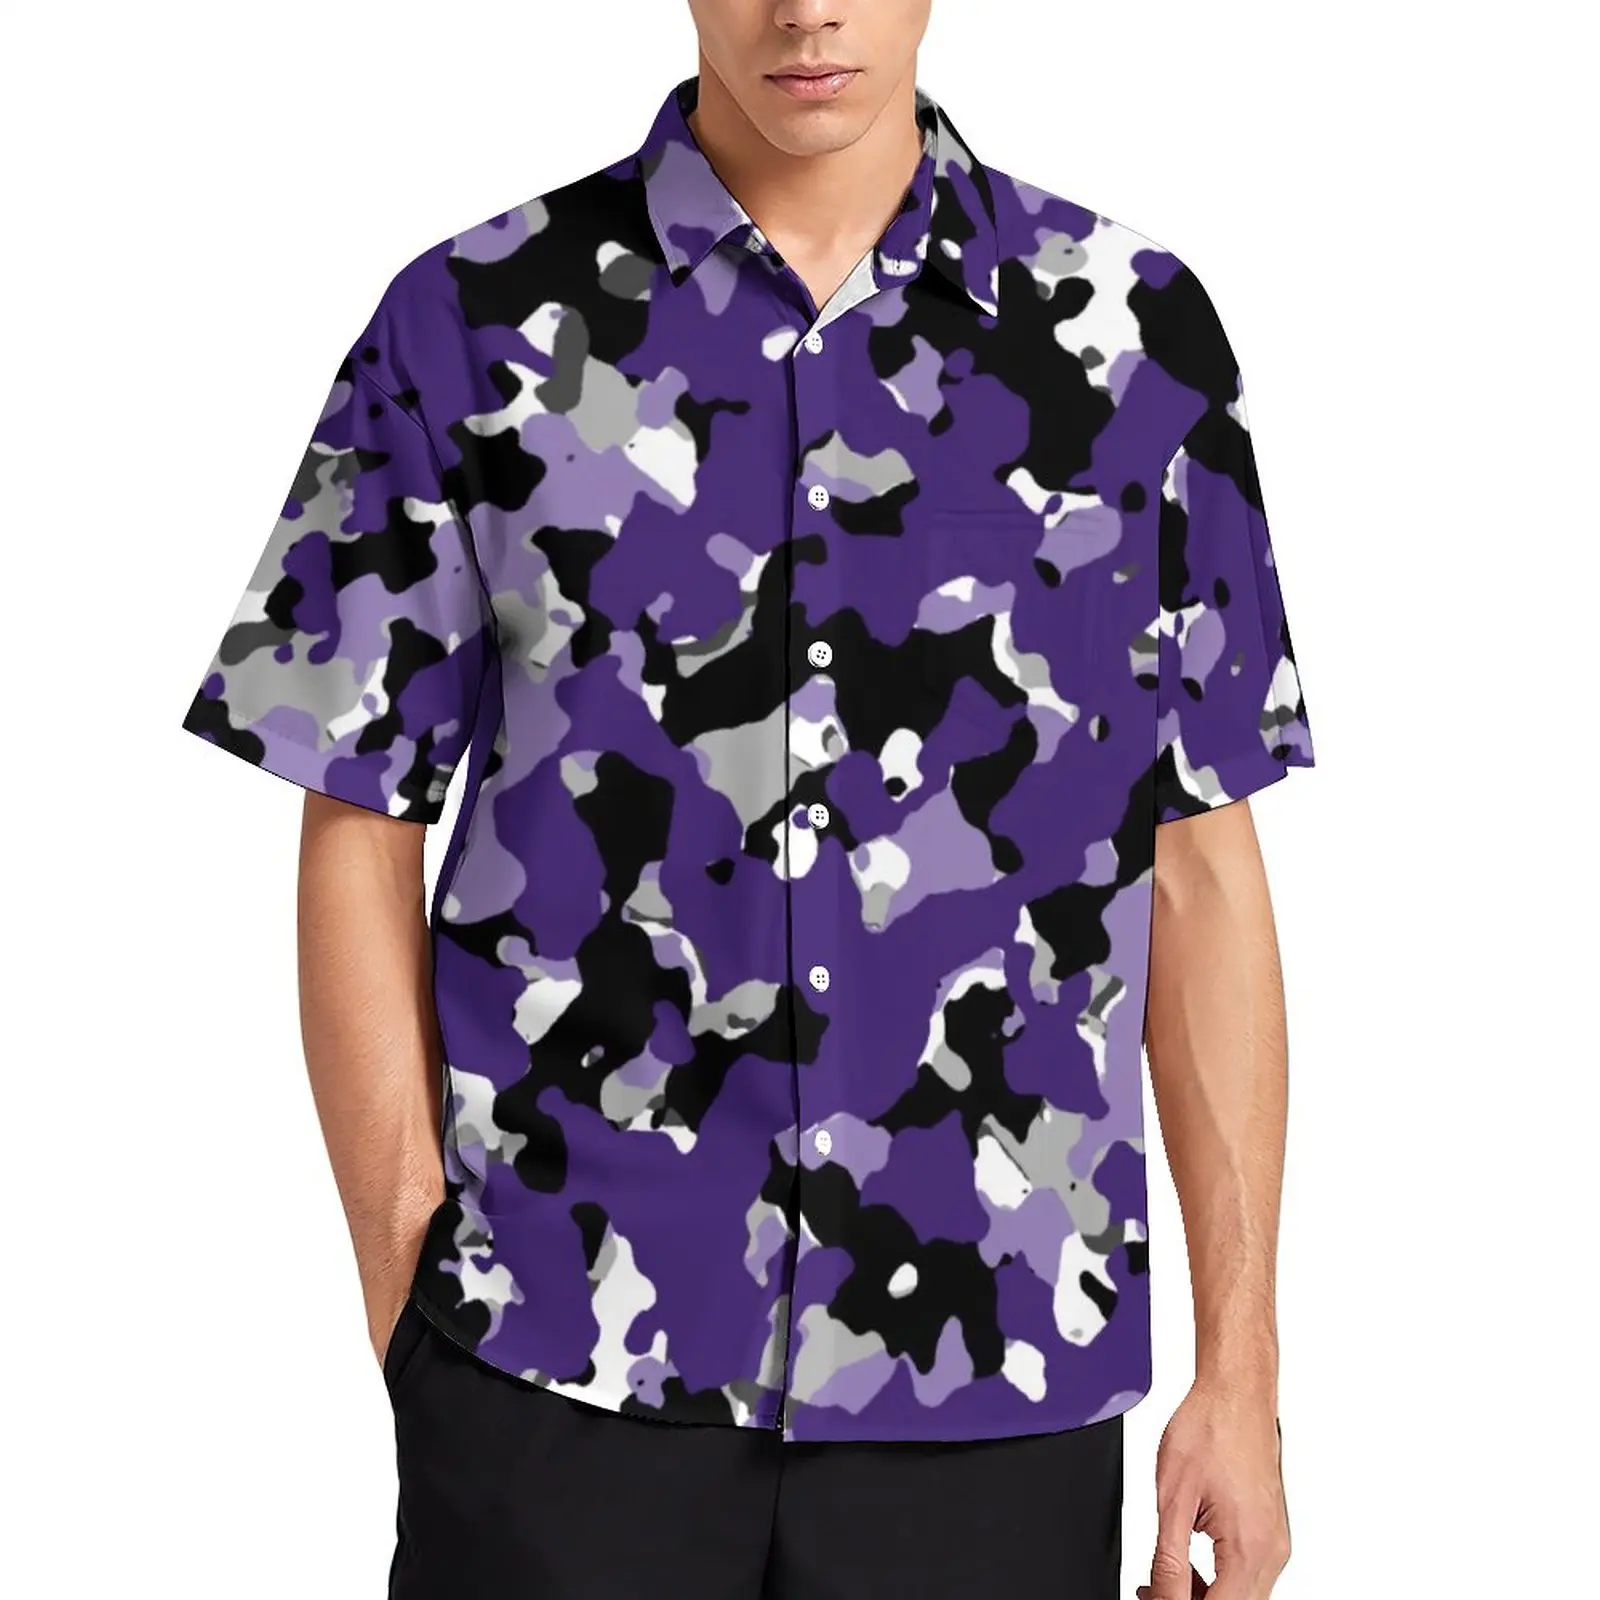 

Гавайская рубашка мужская с коротким рукавом, Повседневная Блузка с разноцветным камуфляжным принтом, в стиле оверсайз, фиолетового и черн...